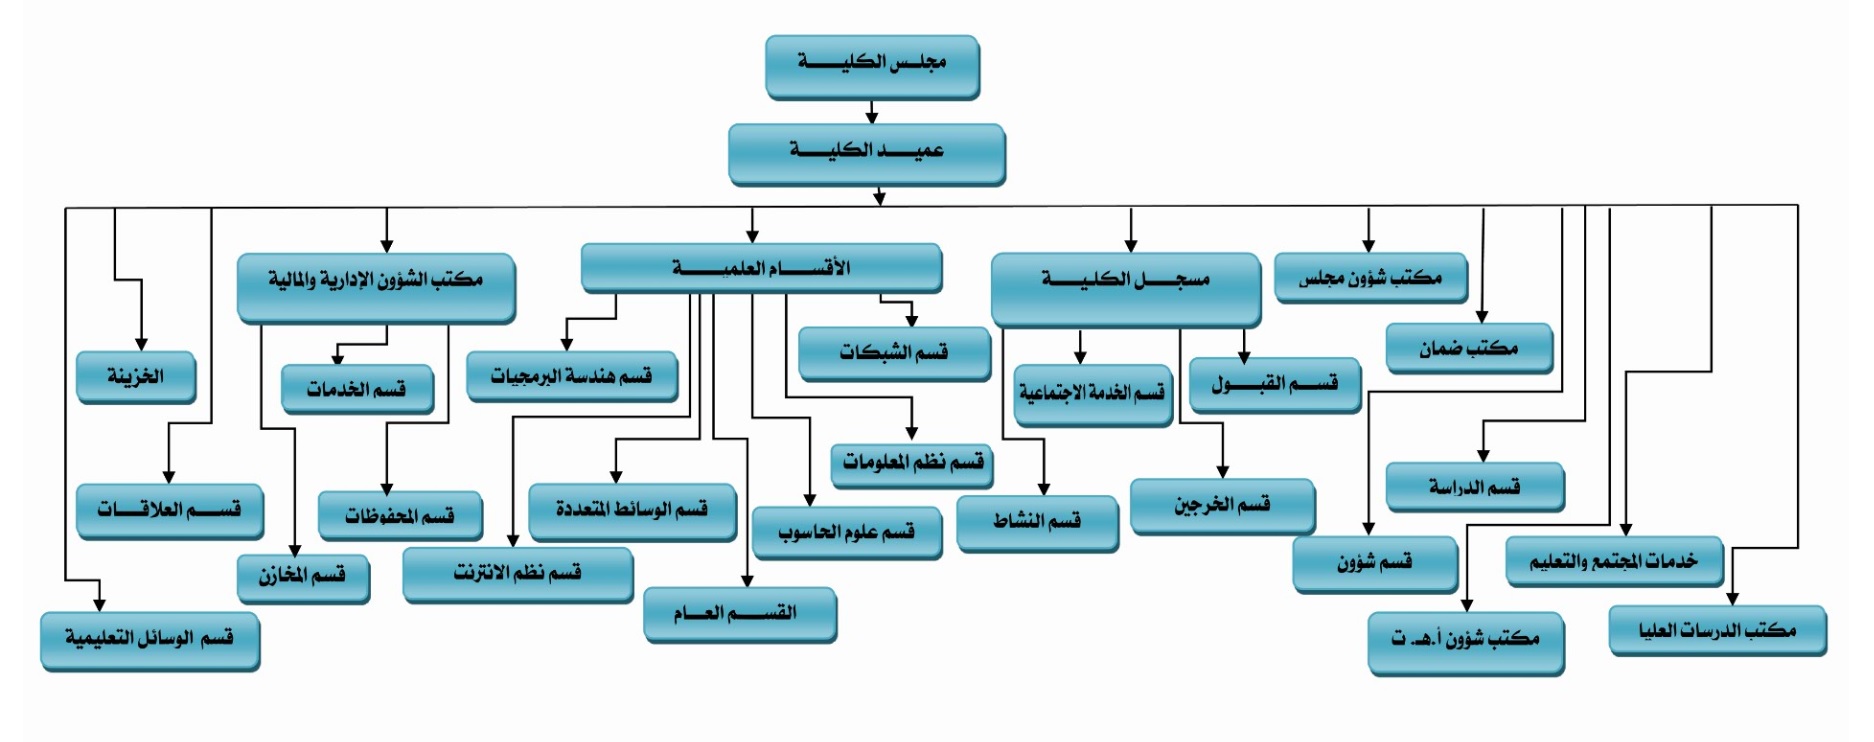 الهيكل التنظيمي لكلية تقنية المعلومات